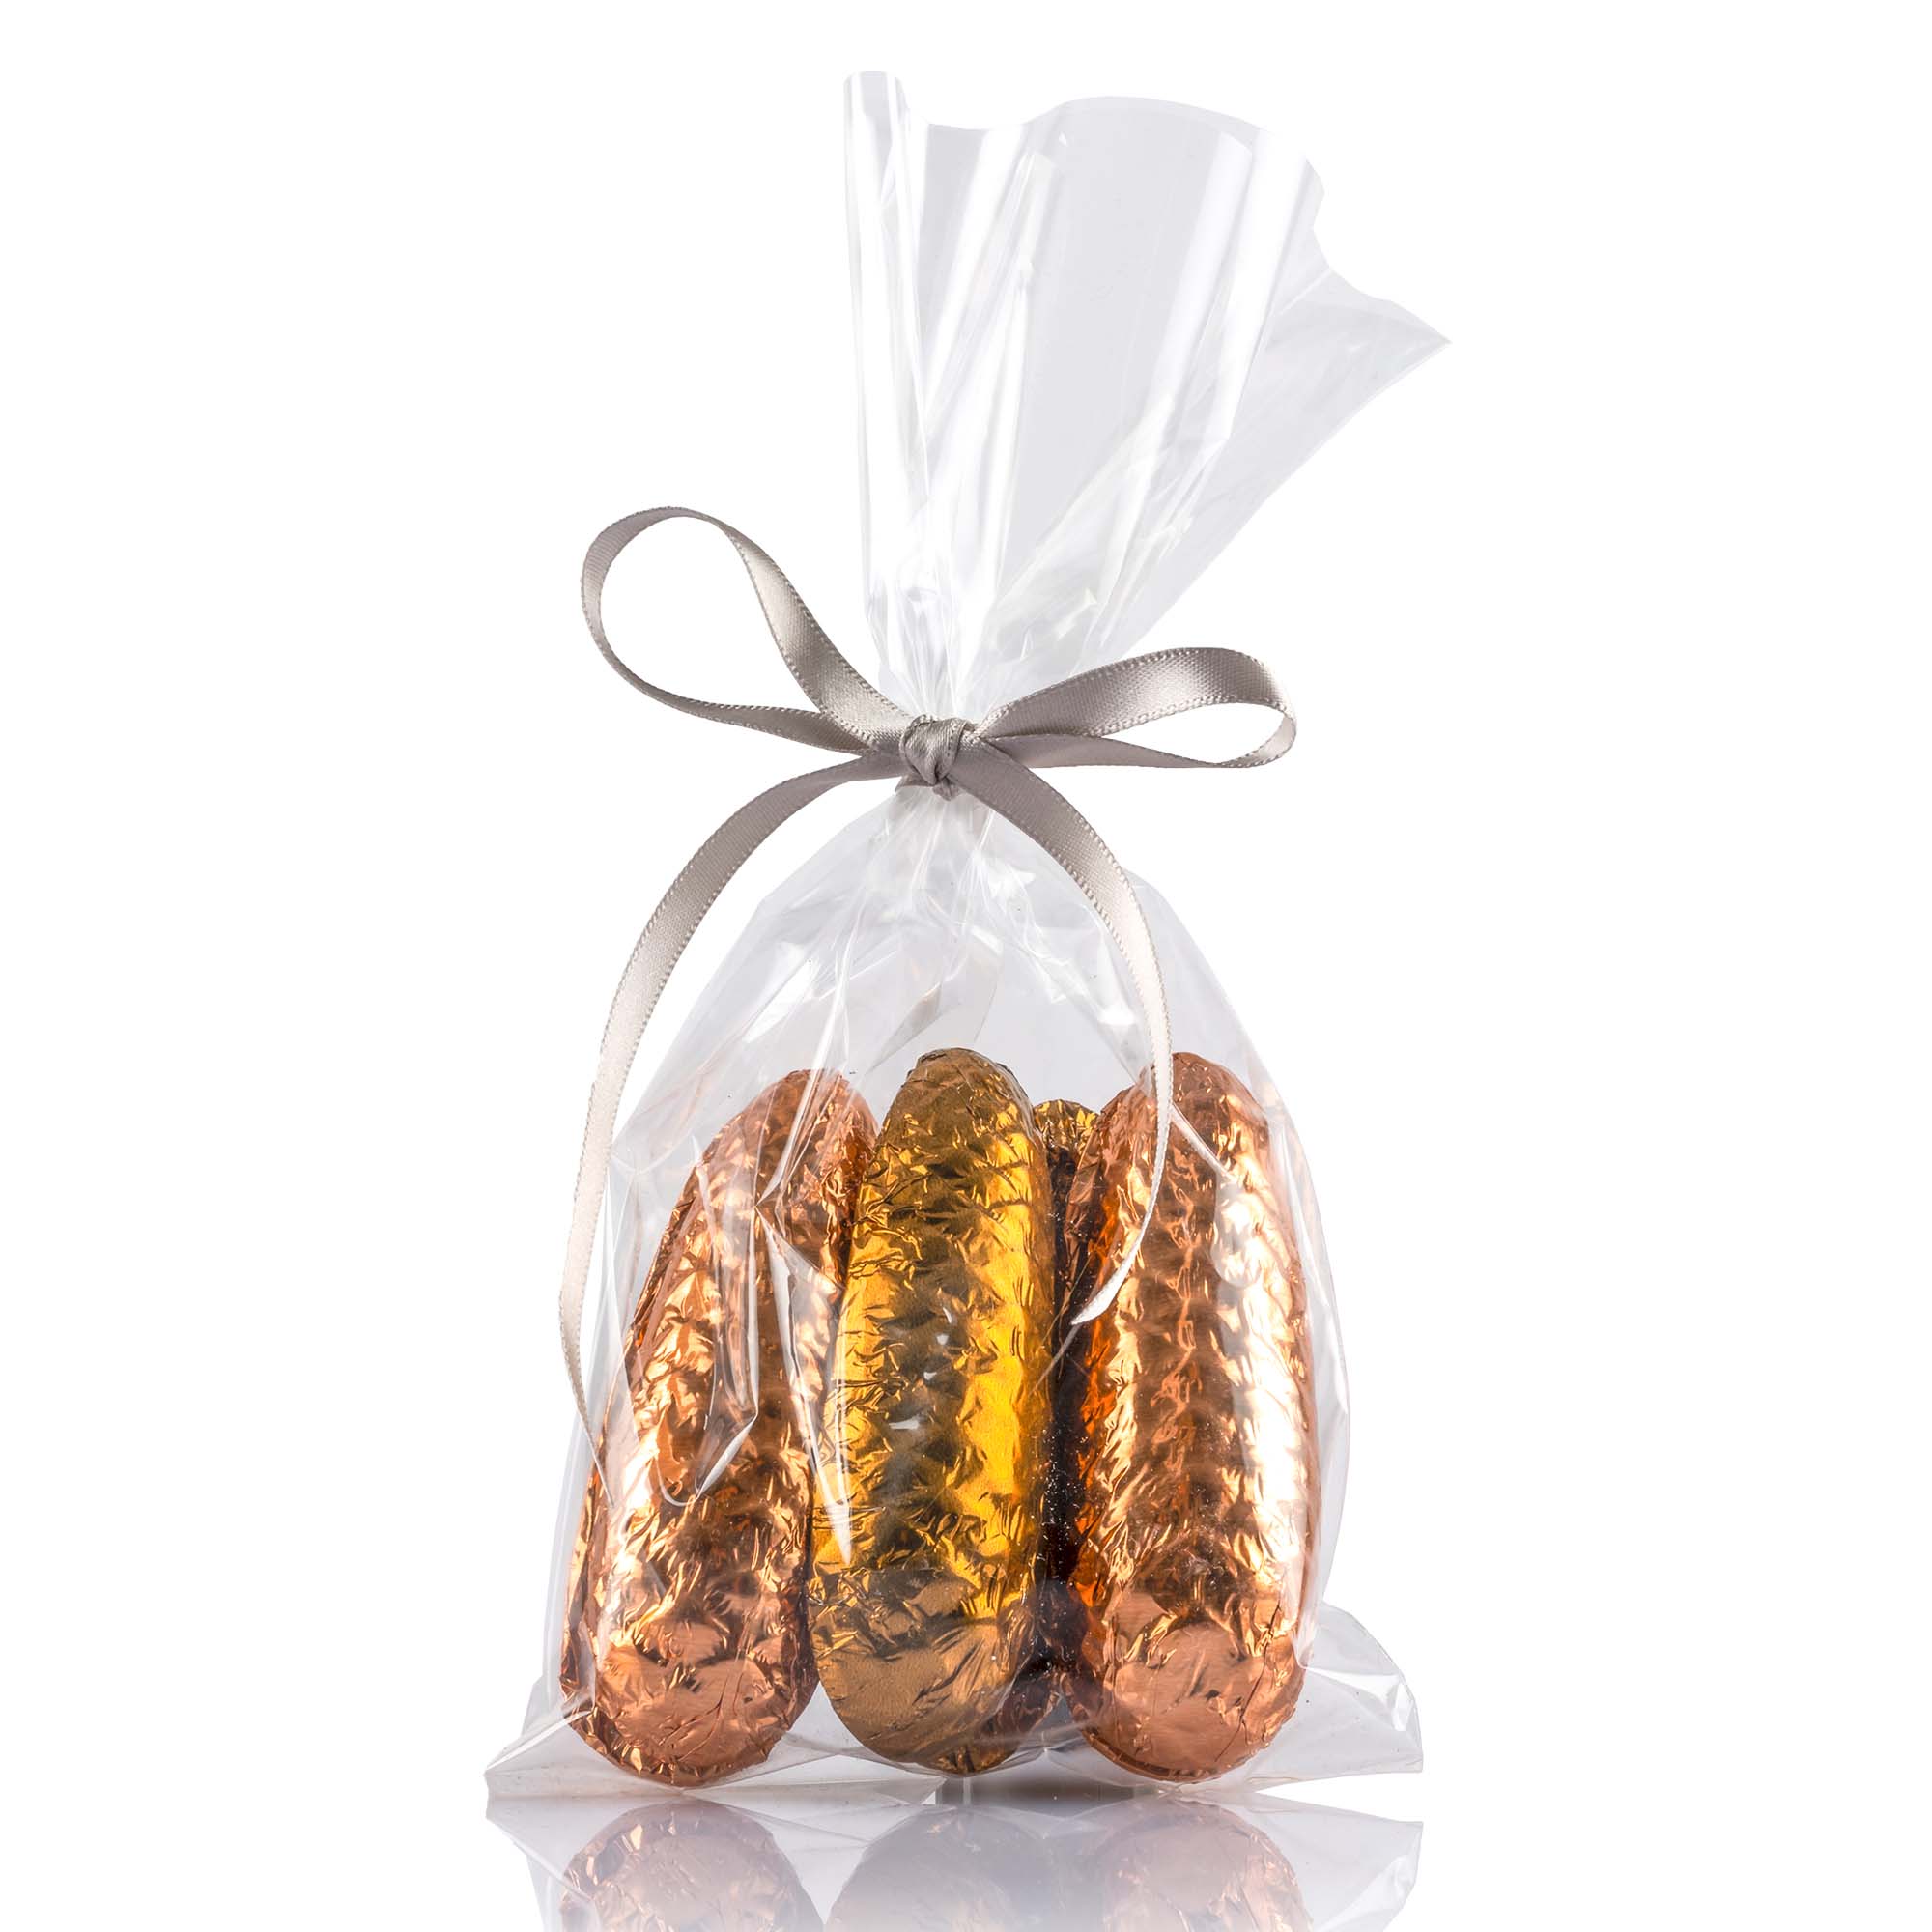 Schokoladen-Tannenzapfen gefüllt Kupfertöne im Säckli 6 Stk, 90g